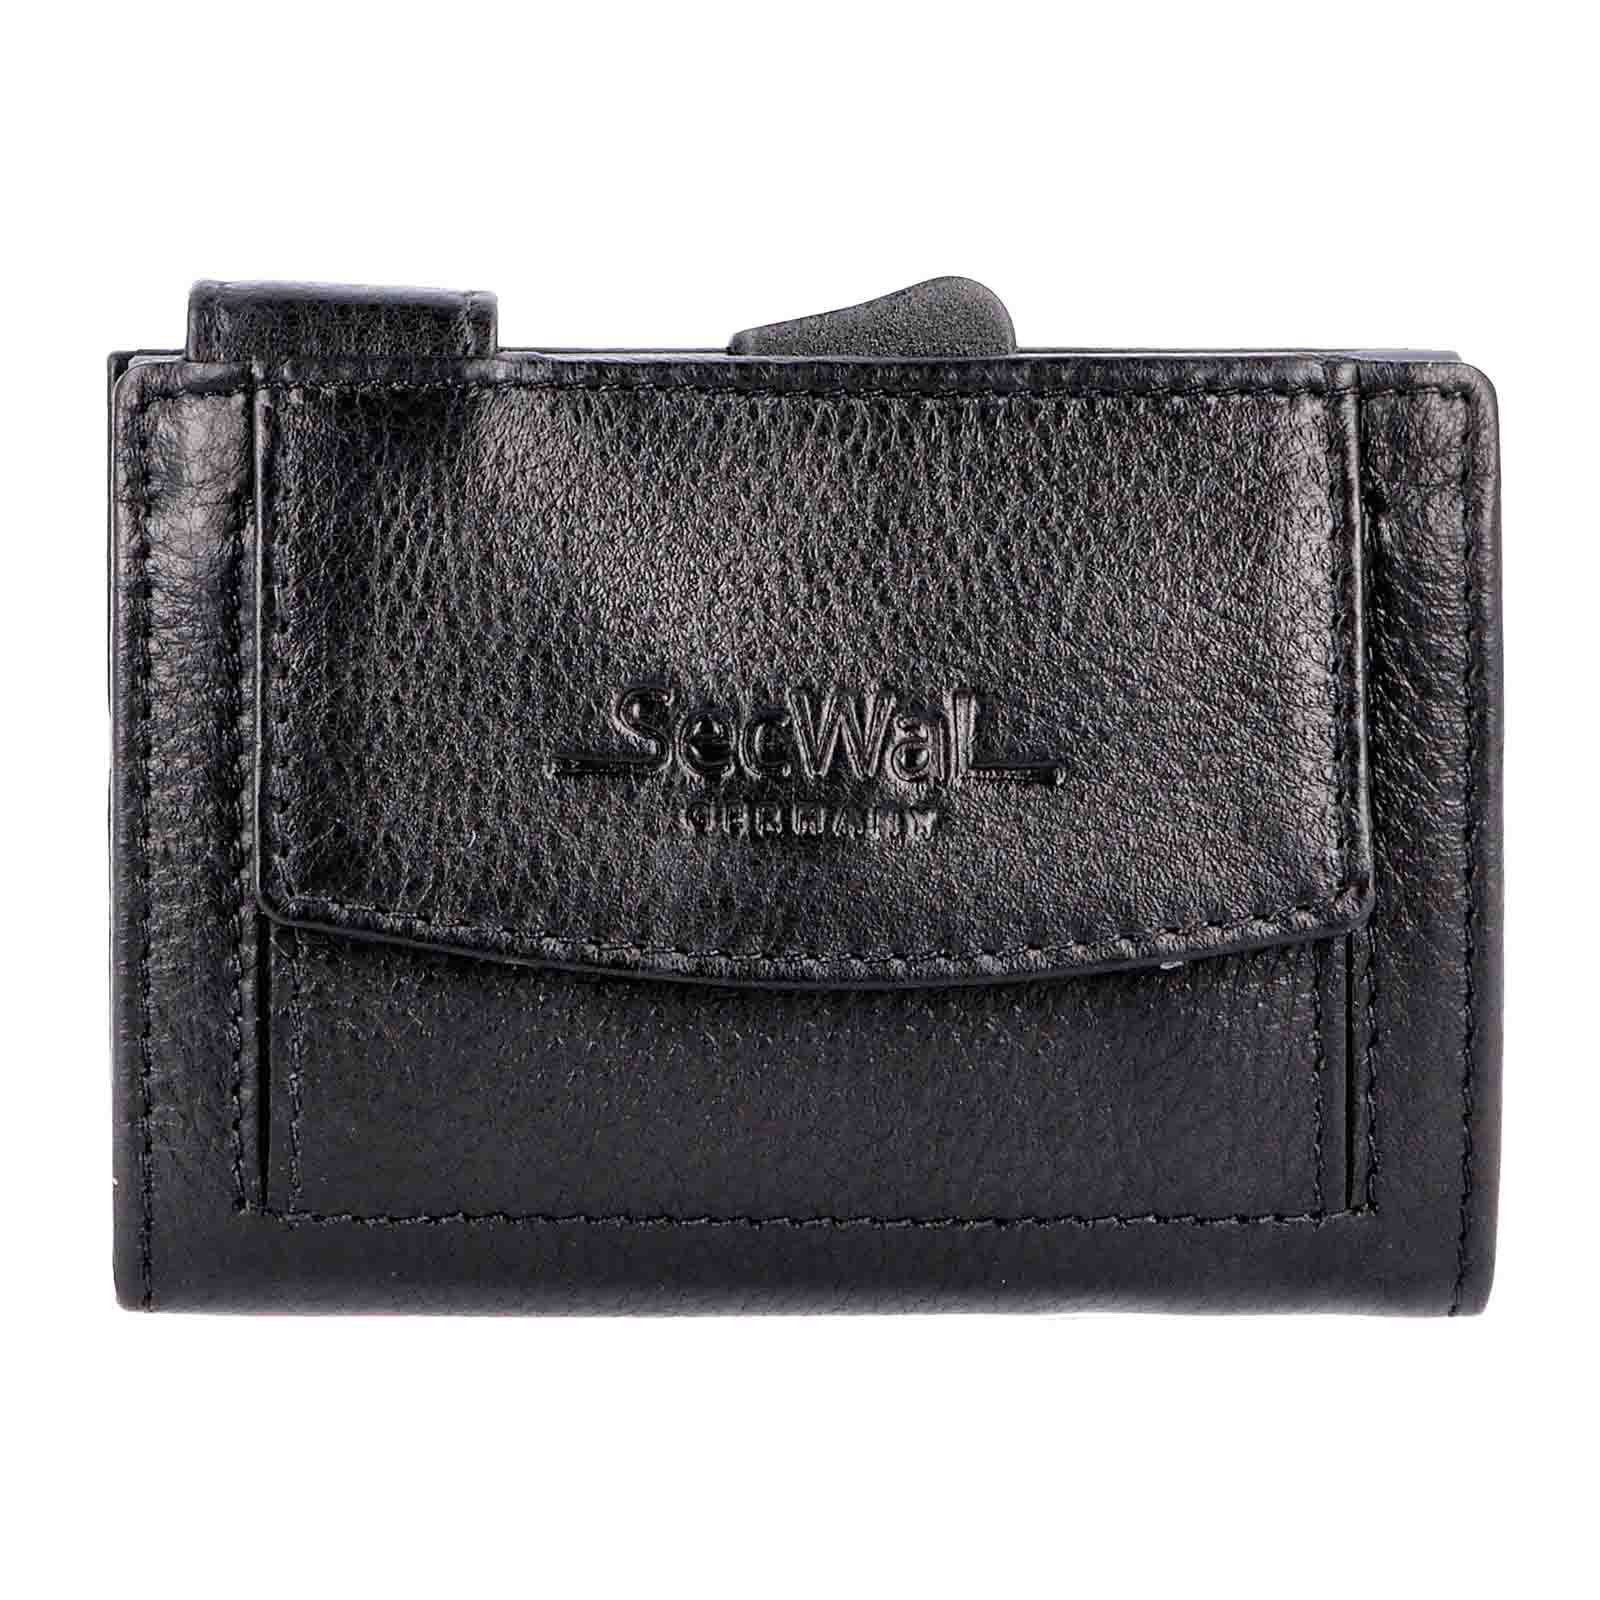 Leder Kartenetui SecWal RFID mit Geldbörse Schutz SW2XL, Geldbörse Münzfach Schwarz Portemonnaie RFID